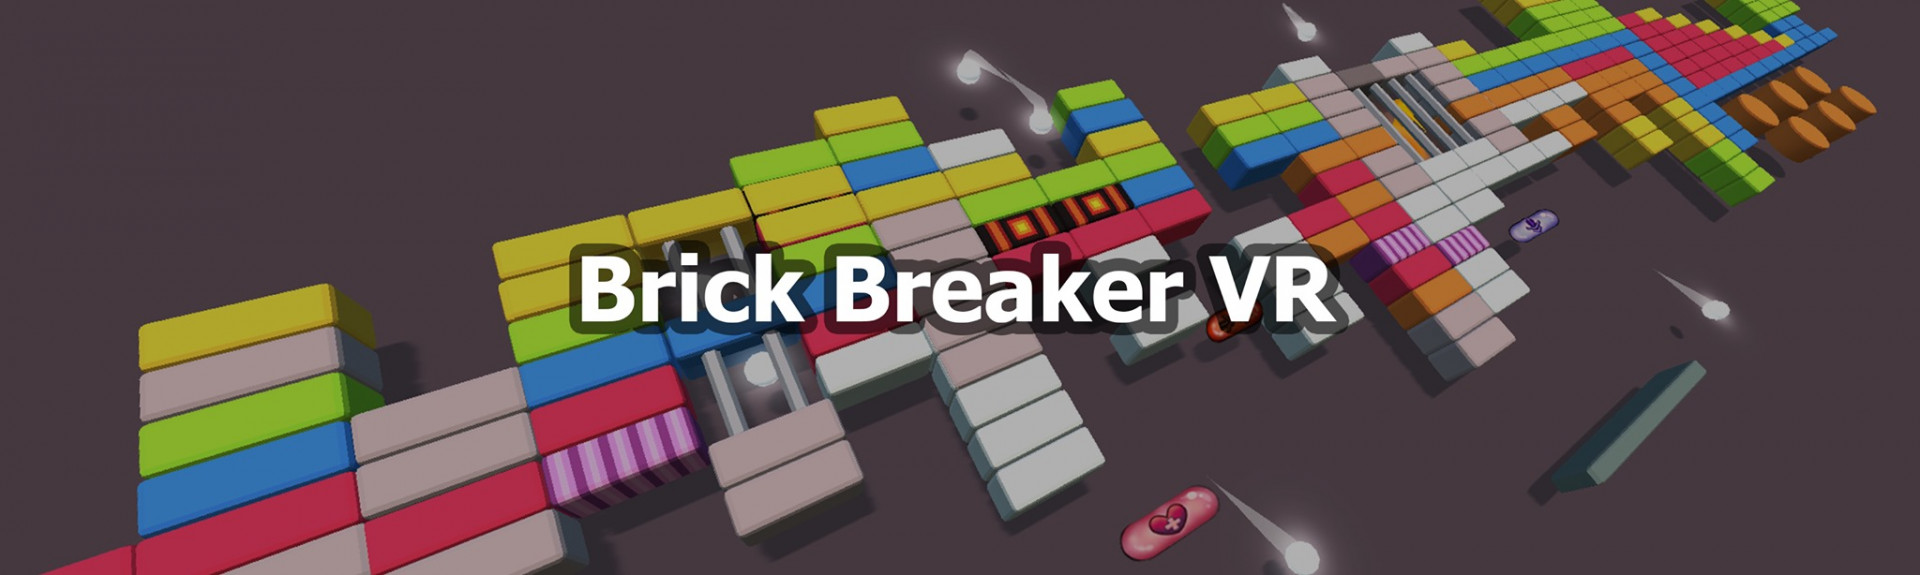 Brick Breaker VR